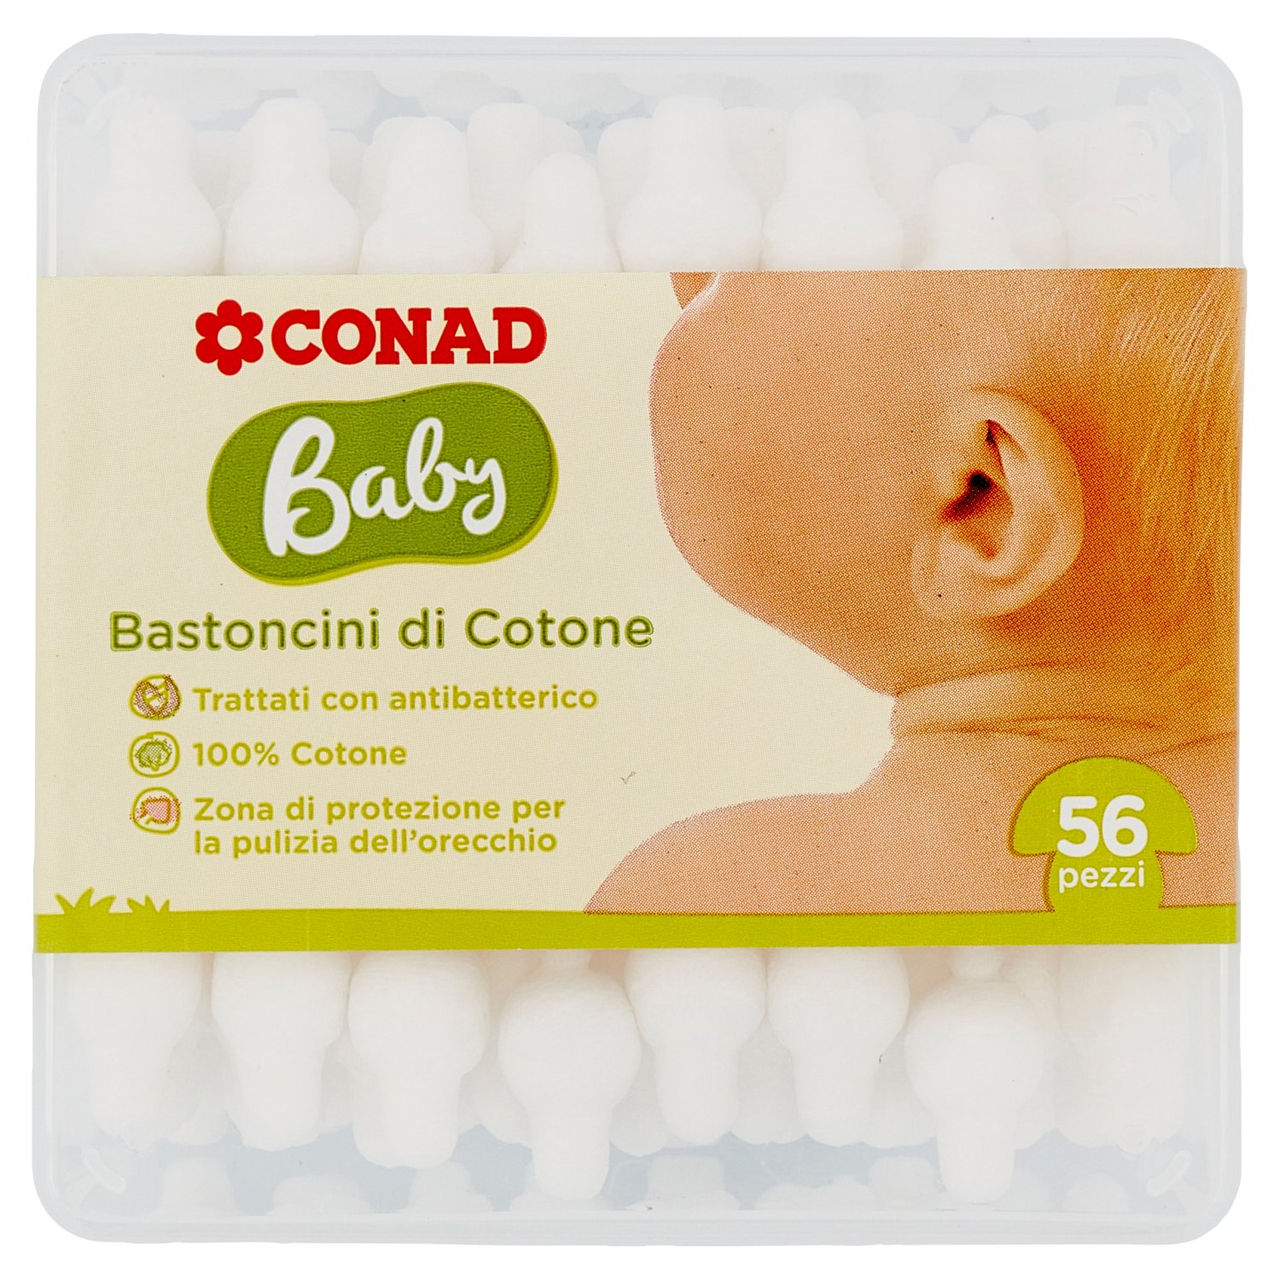 Bastoncini di Cotone 56 pz Baby Conad online